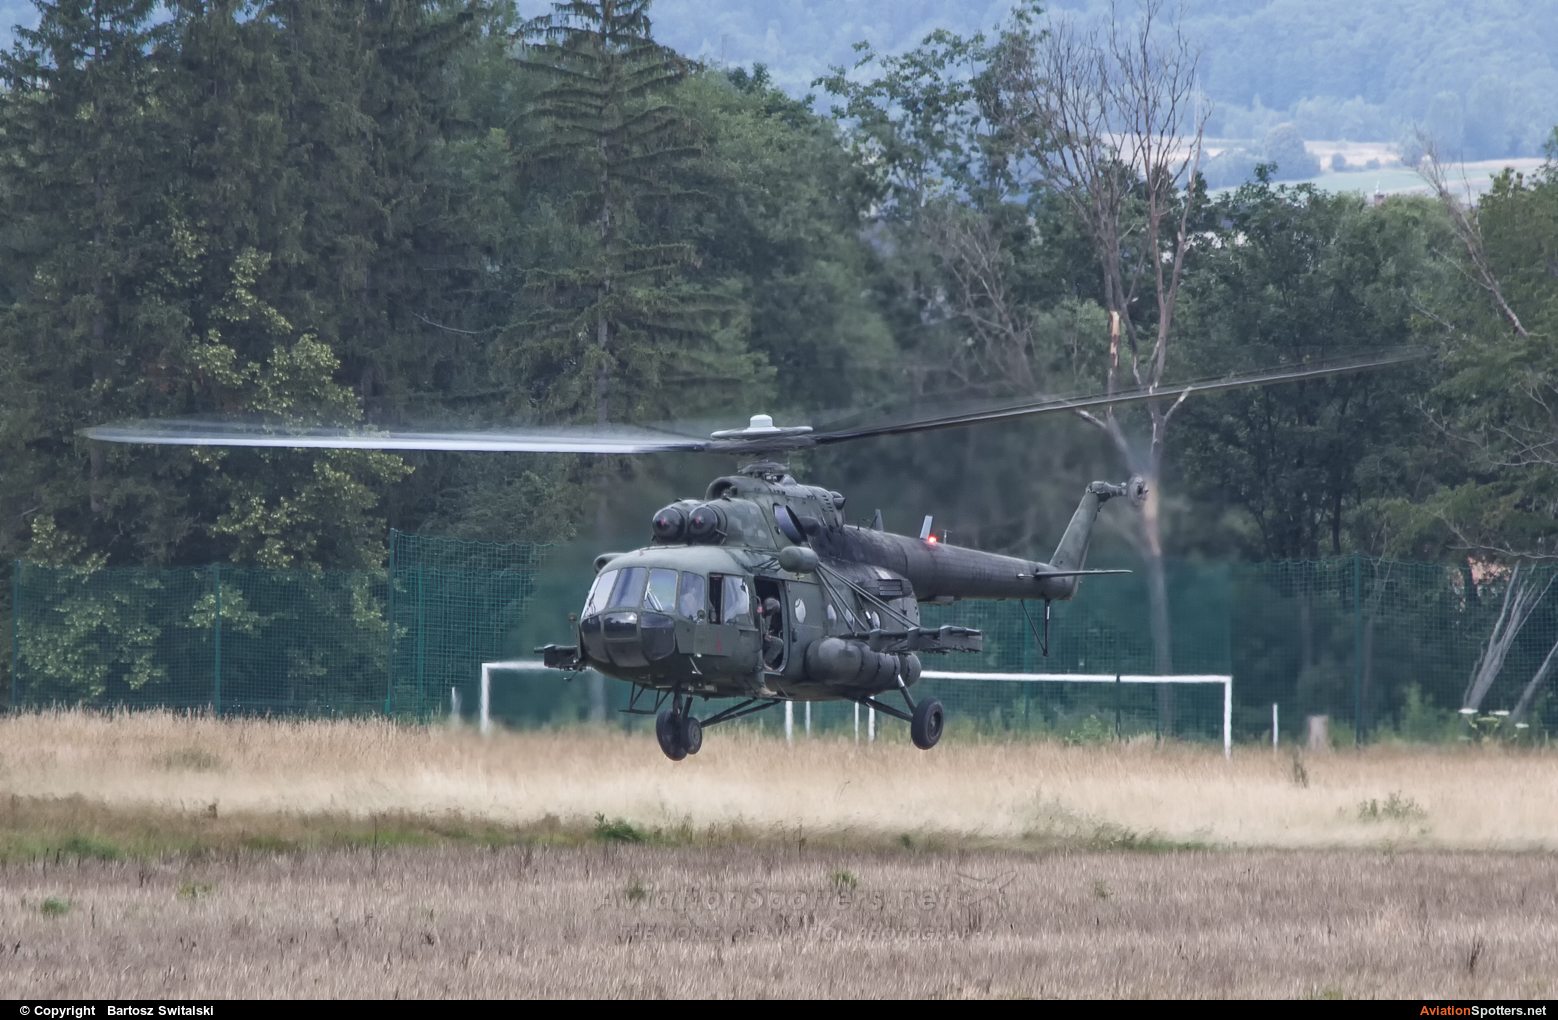   Mi-17-1V  (6110) By Bartosz Switalski (BartoszSwitalski)